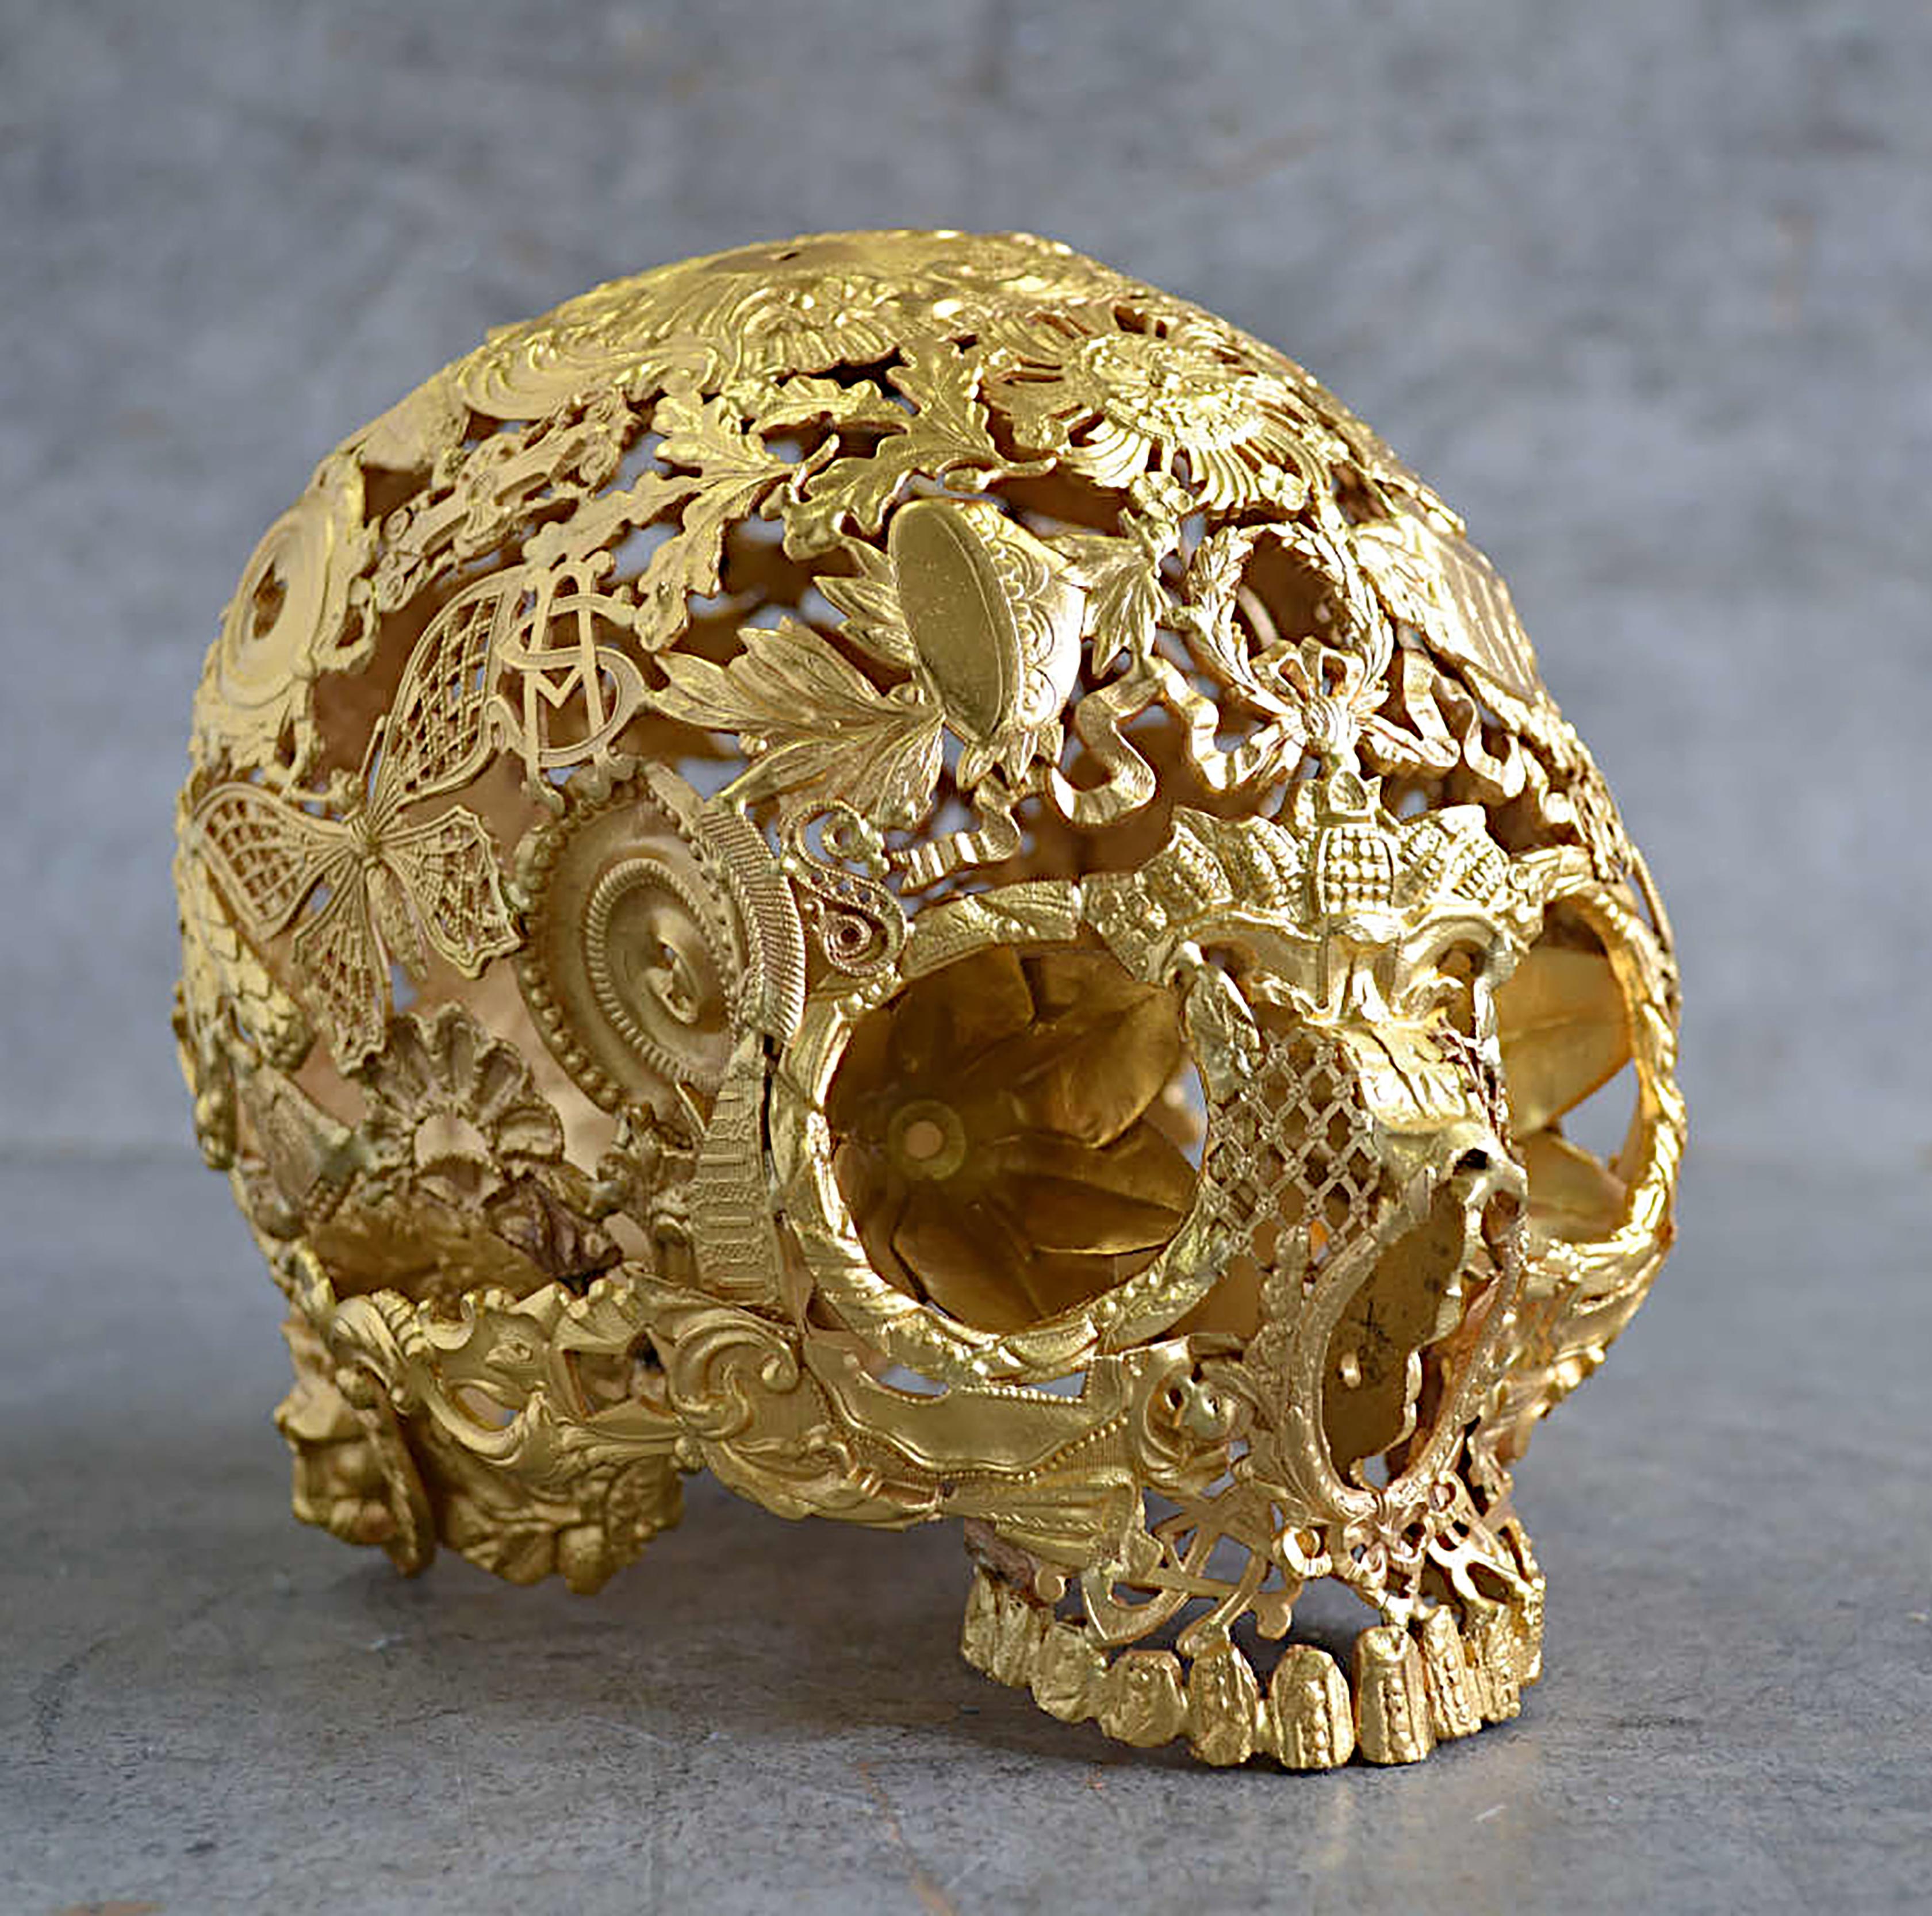 gilded skull